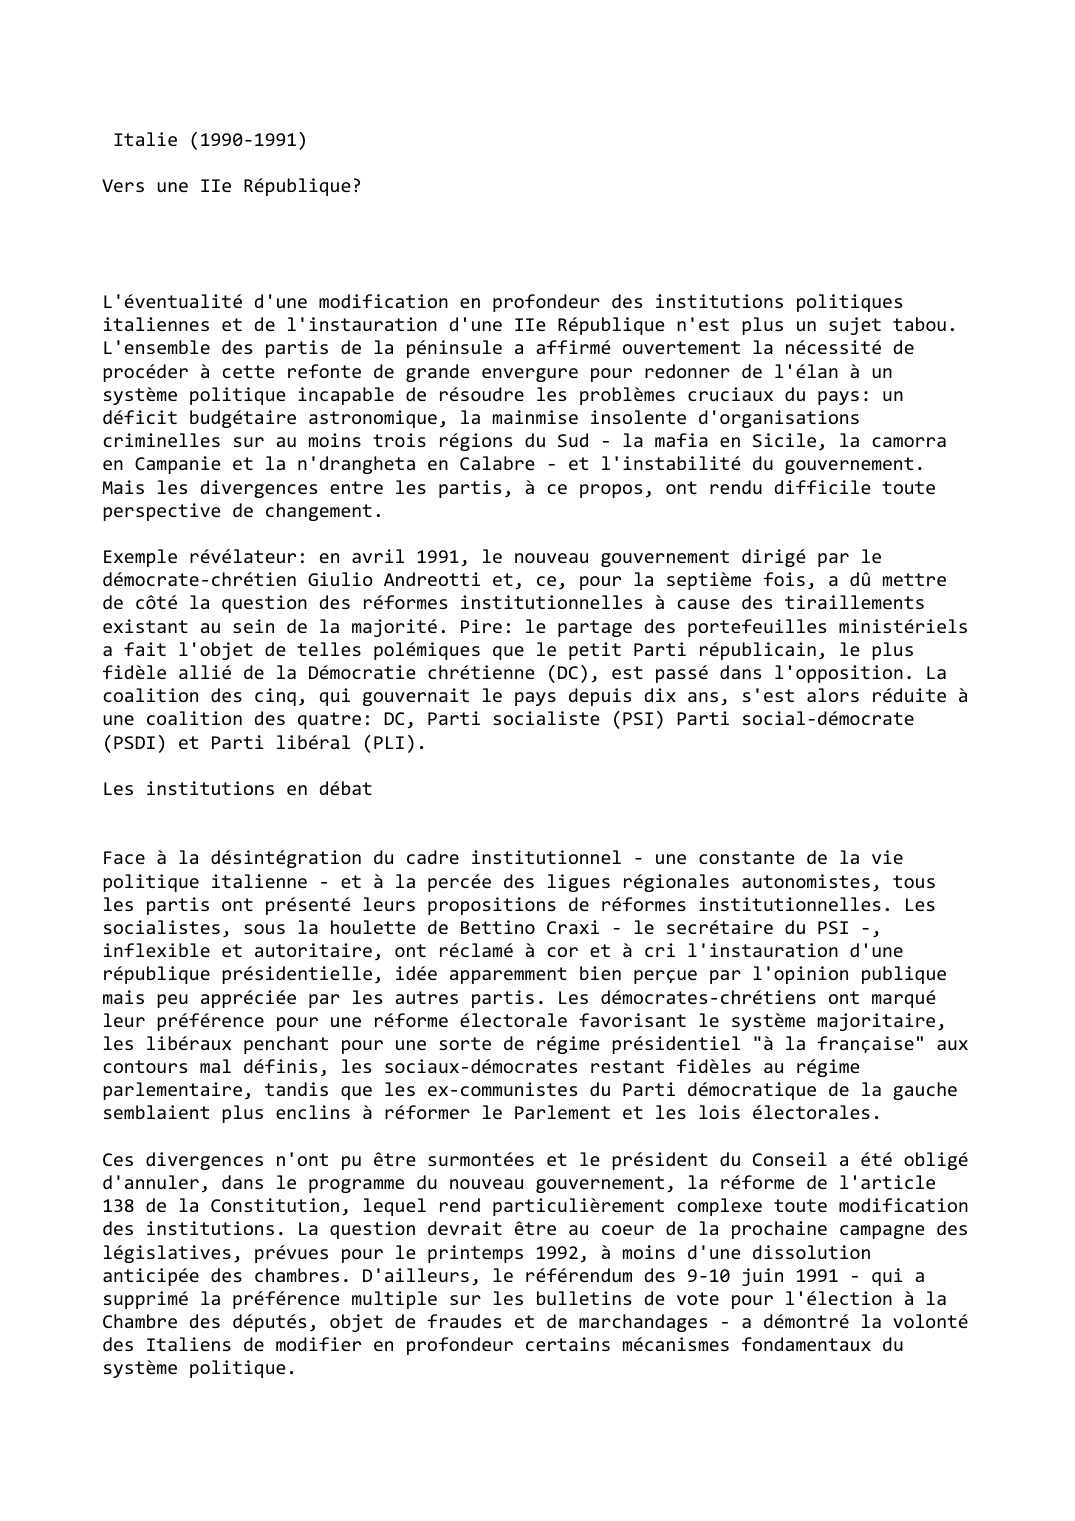 Prévisualisation du document Italie (1990-1991)

Vers une IIe République?